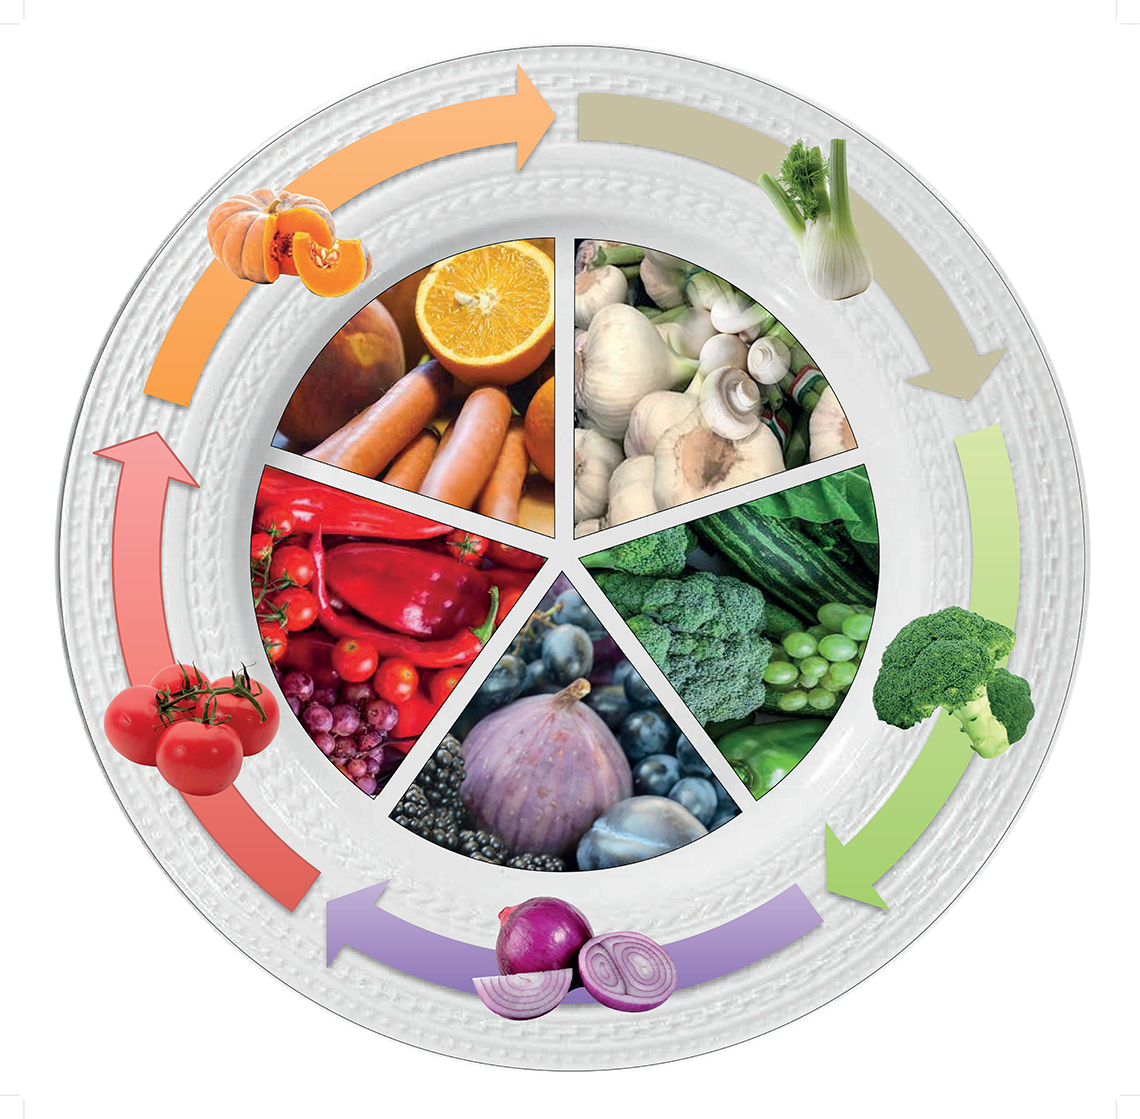 Piatto dei colori – Il piatto rappresenta i 5 colori del benessere